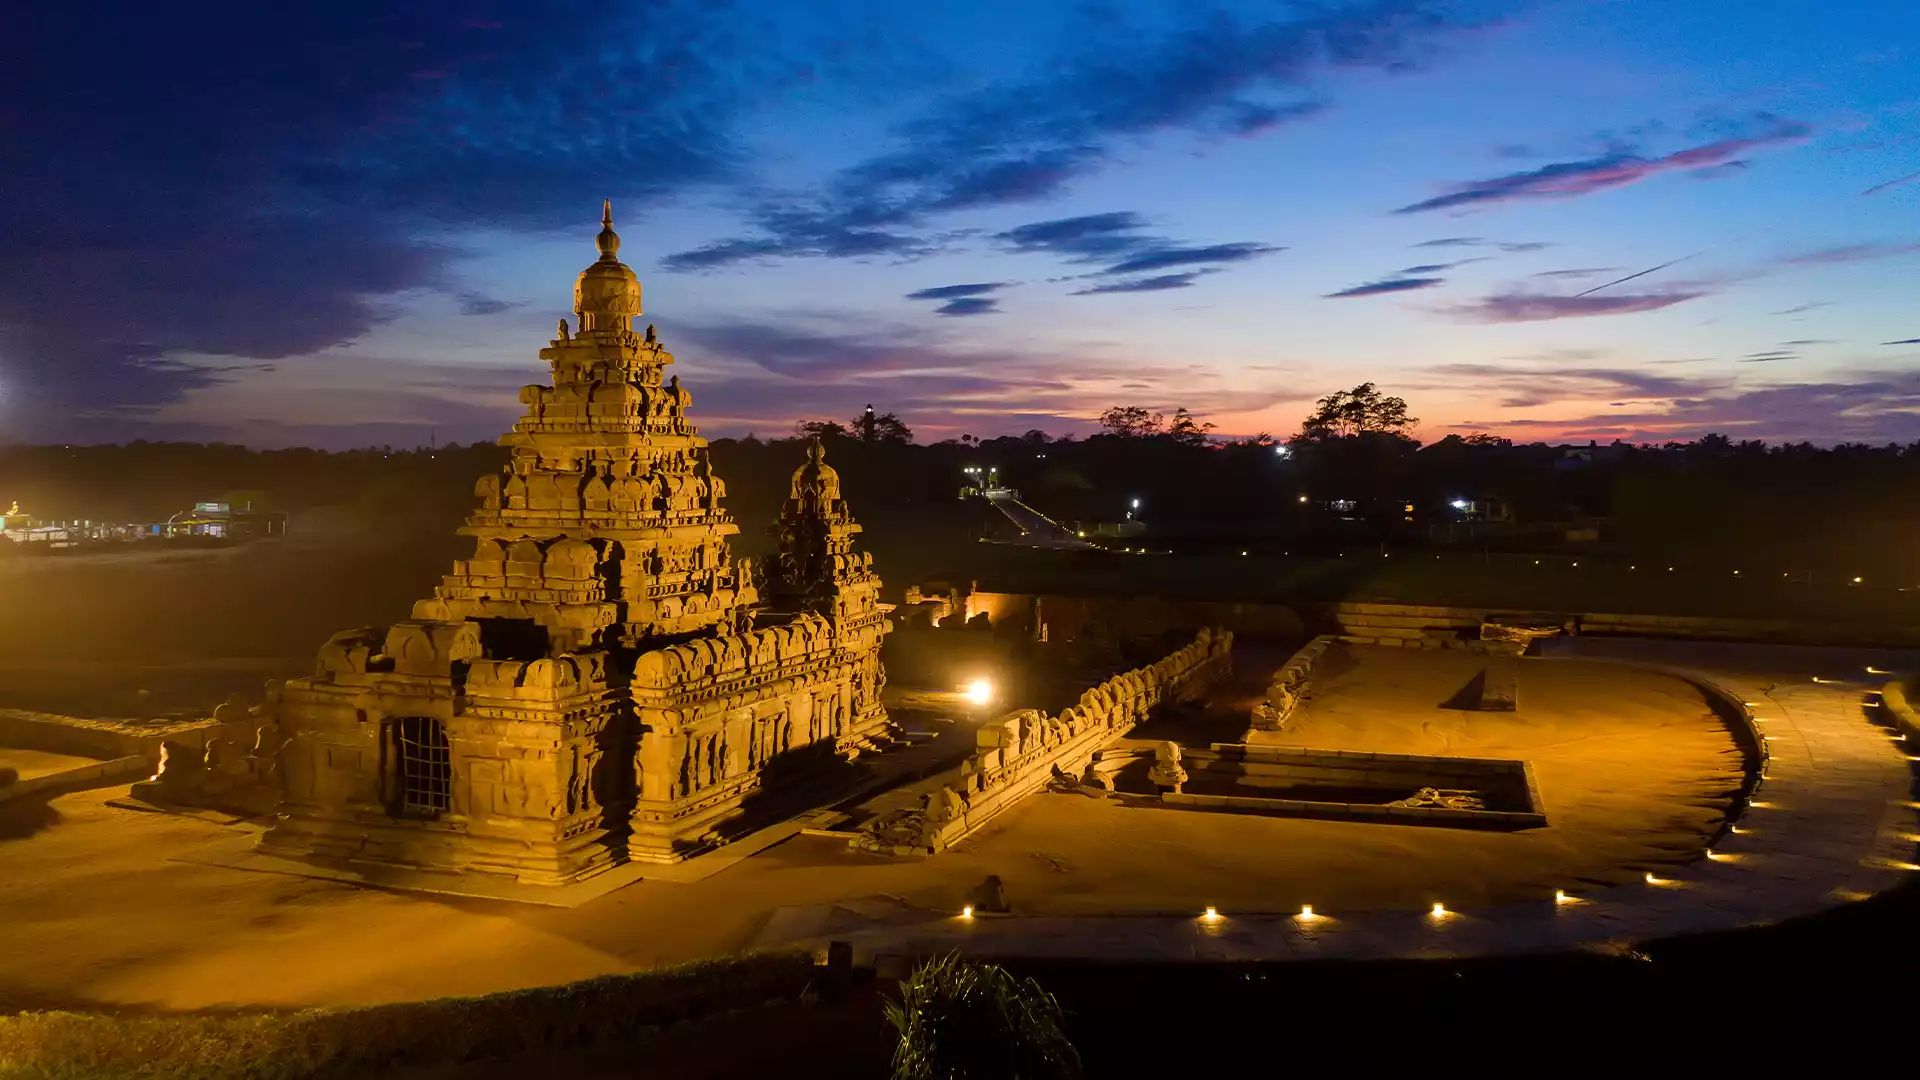 Mamallapuram Shore Temple